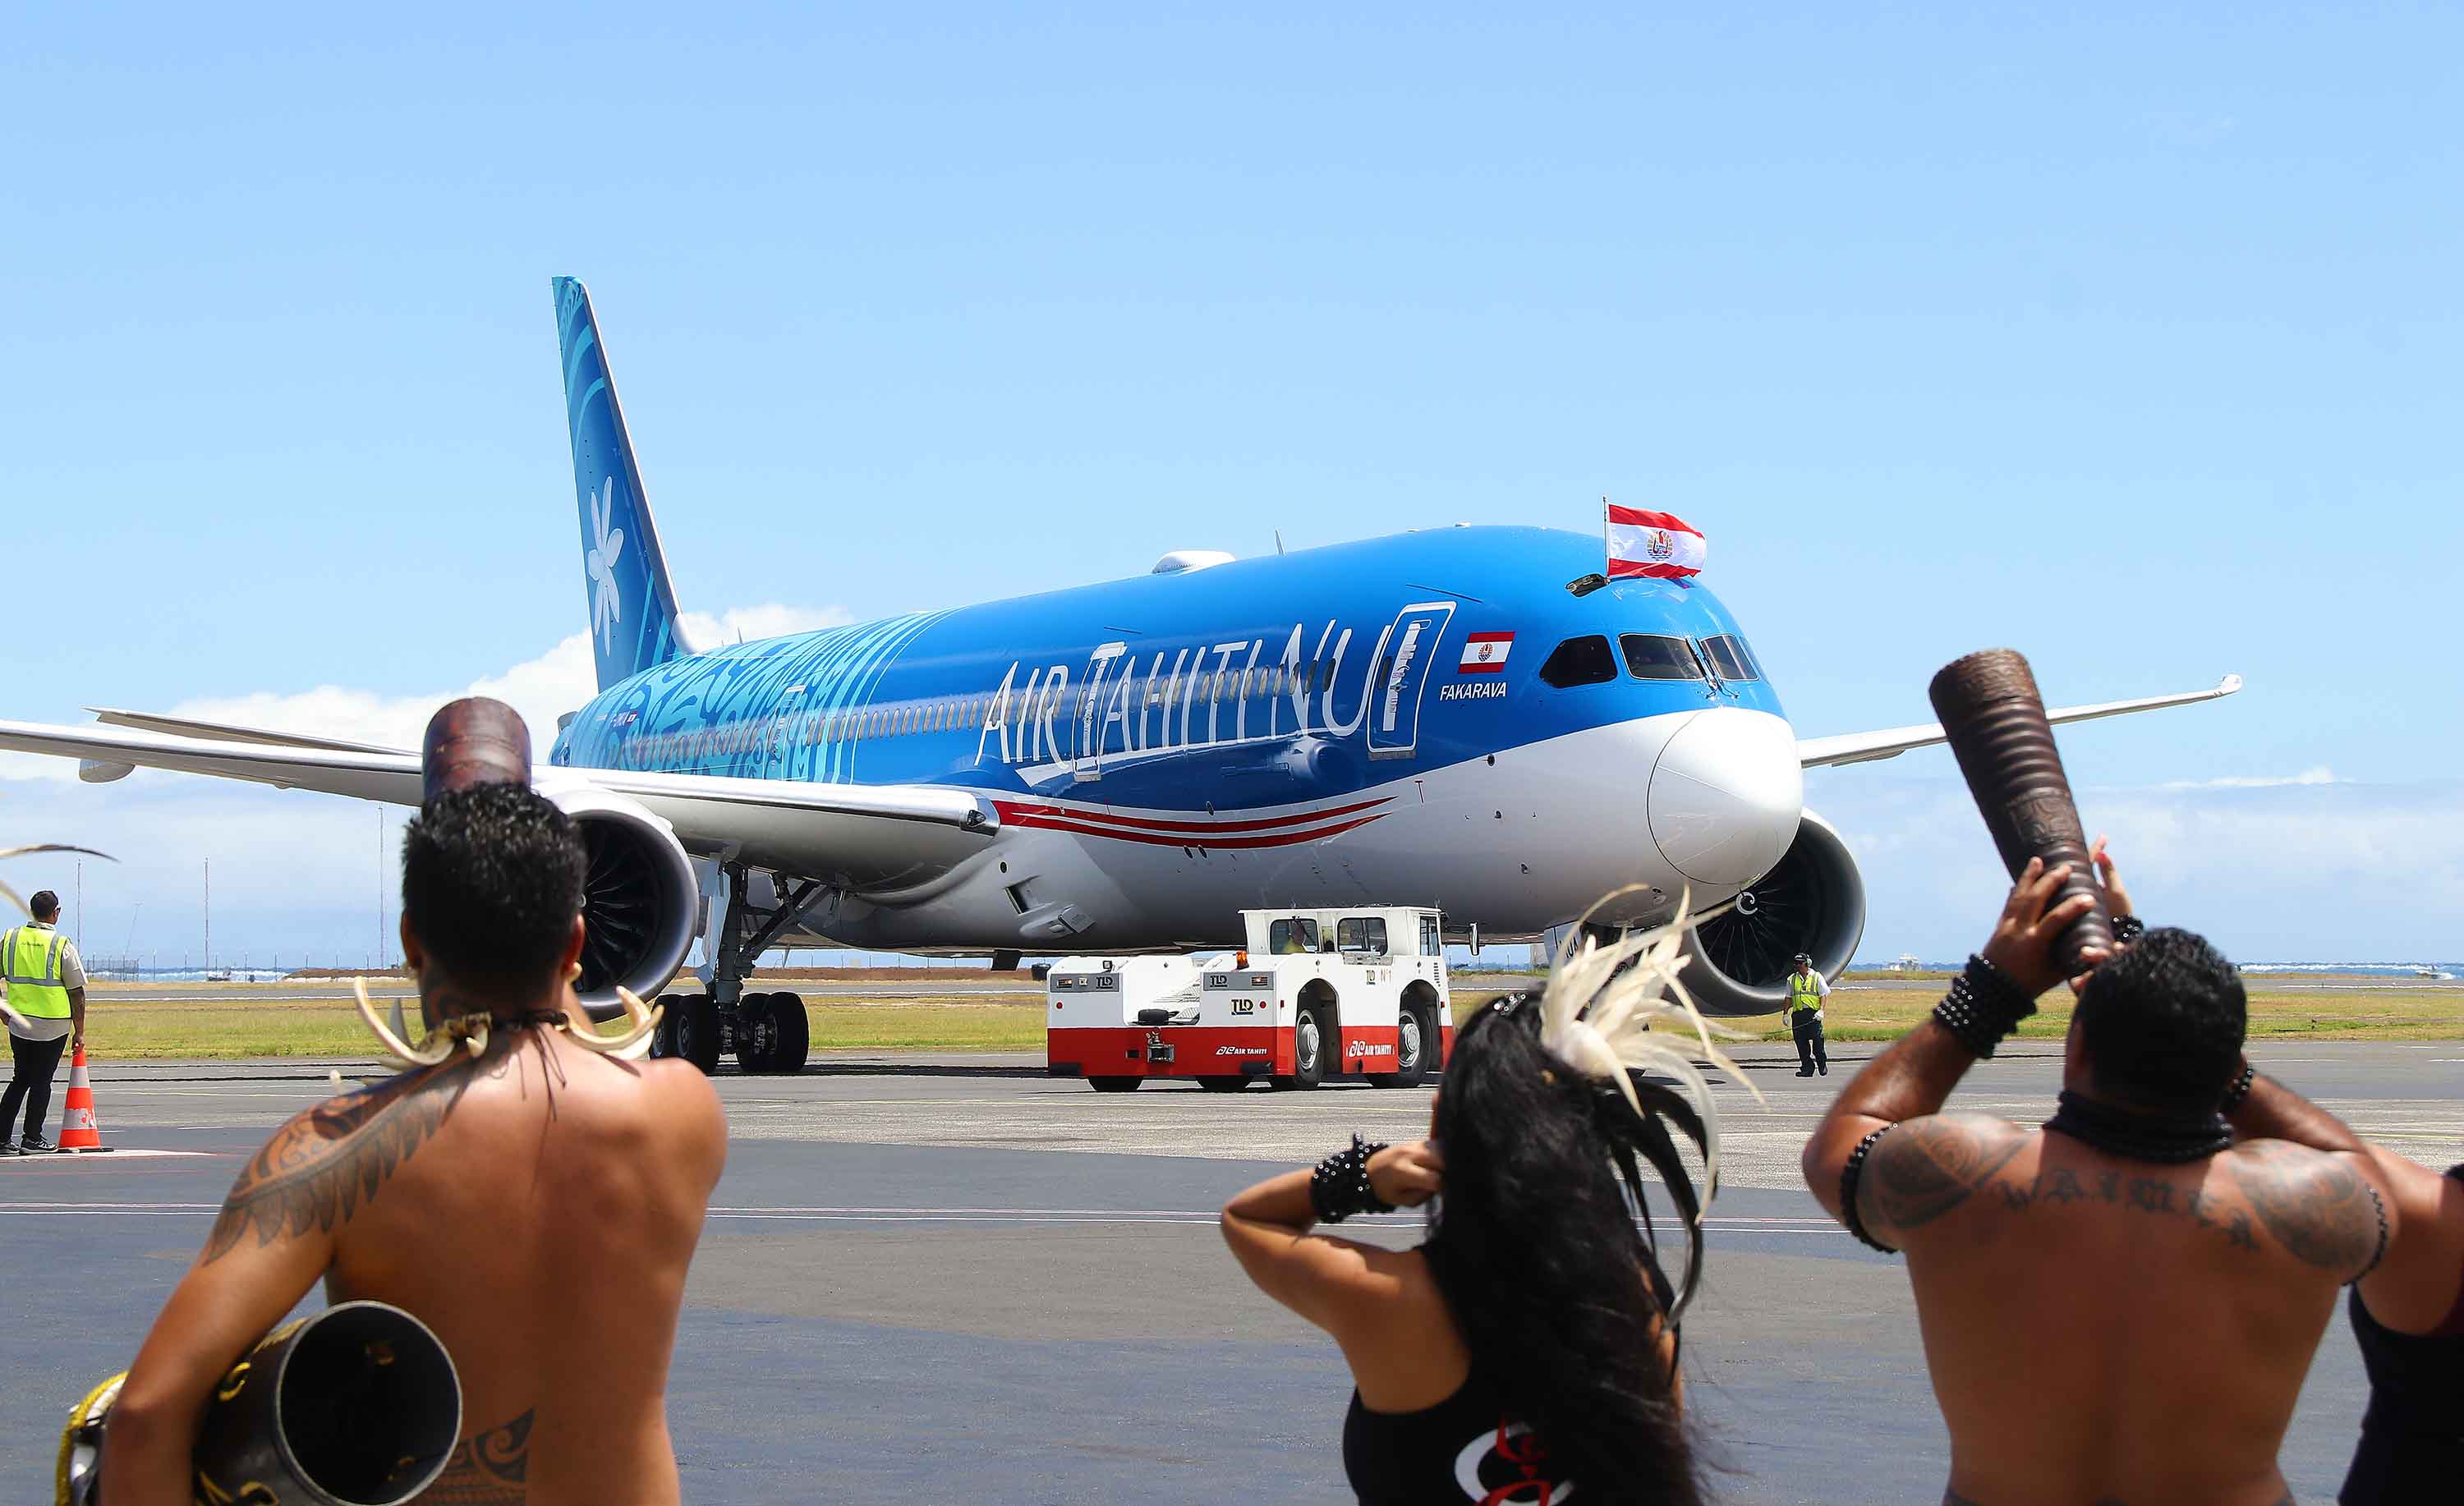 Desserte aérienne : Le premier 787-9 Dreamliner d’Air Tahiti Nui se pose en Polynésie avec un accueil haut en couleurs